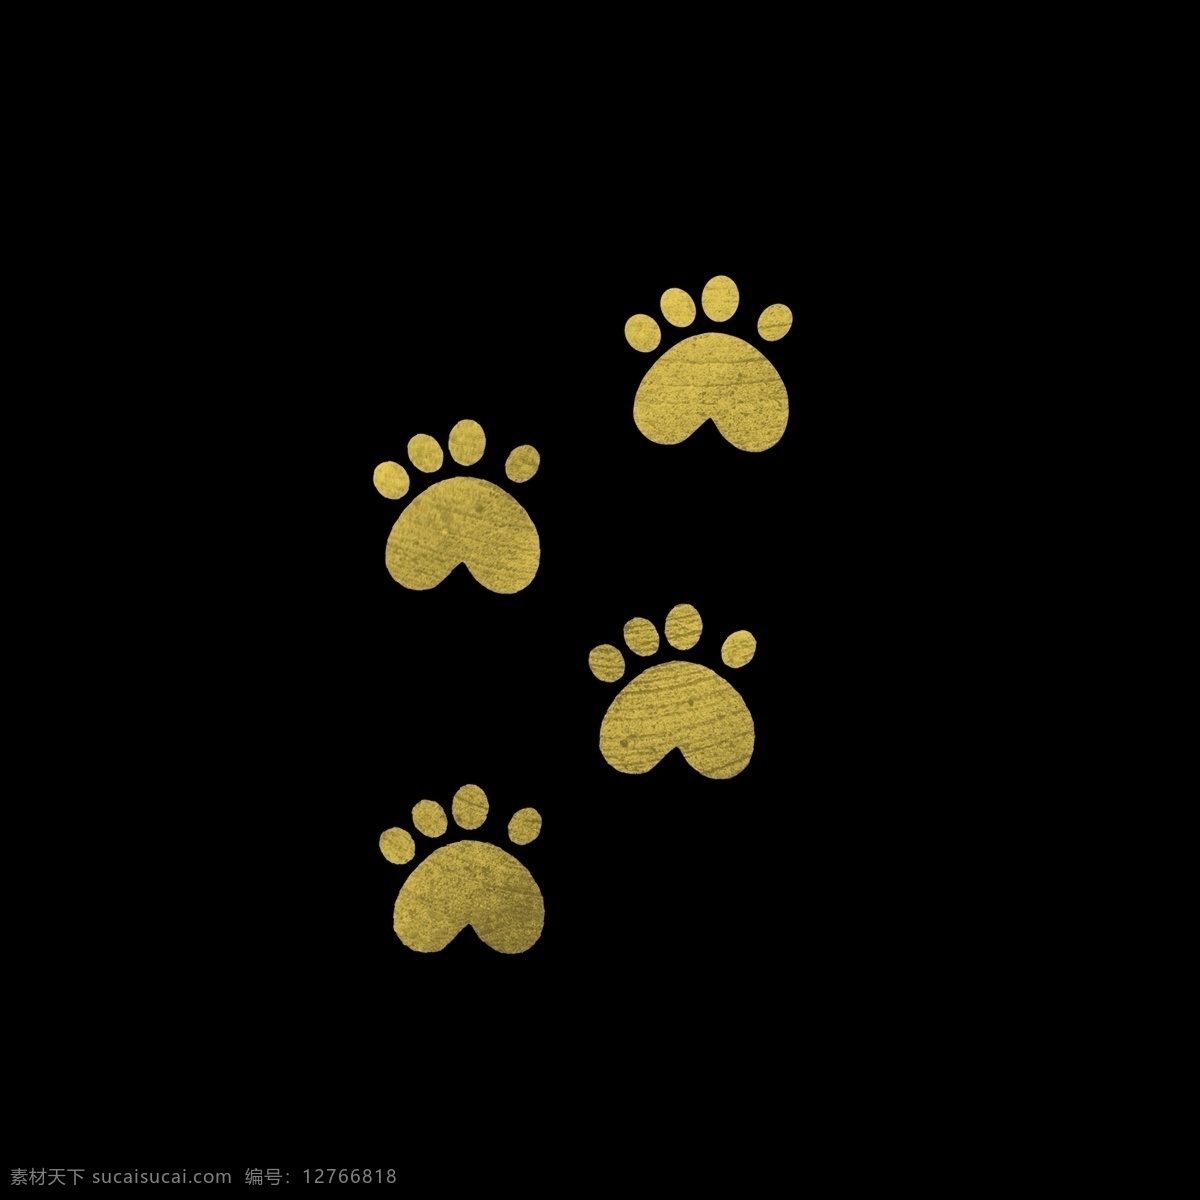 黄色 痕迹 狗 脚印 狗狗 脚丫子 脚丫形状 卡通 简单 简约 简洁 动物脚 几何形状 小狗脚印